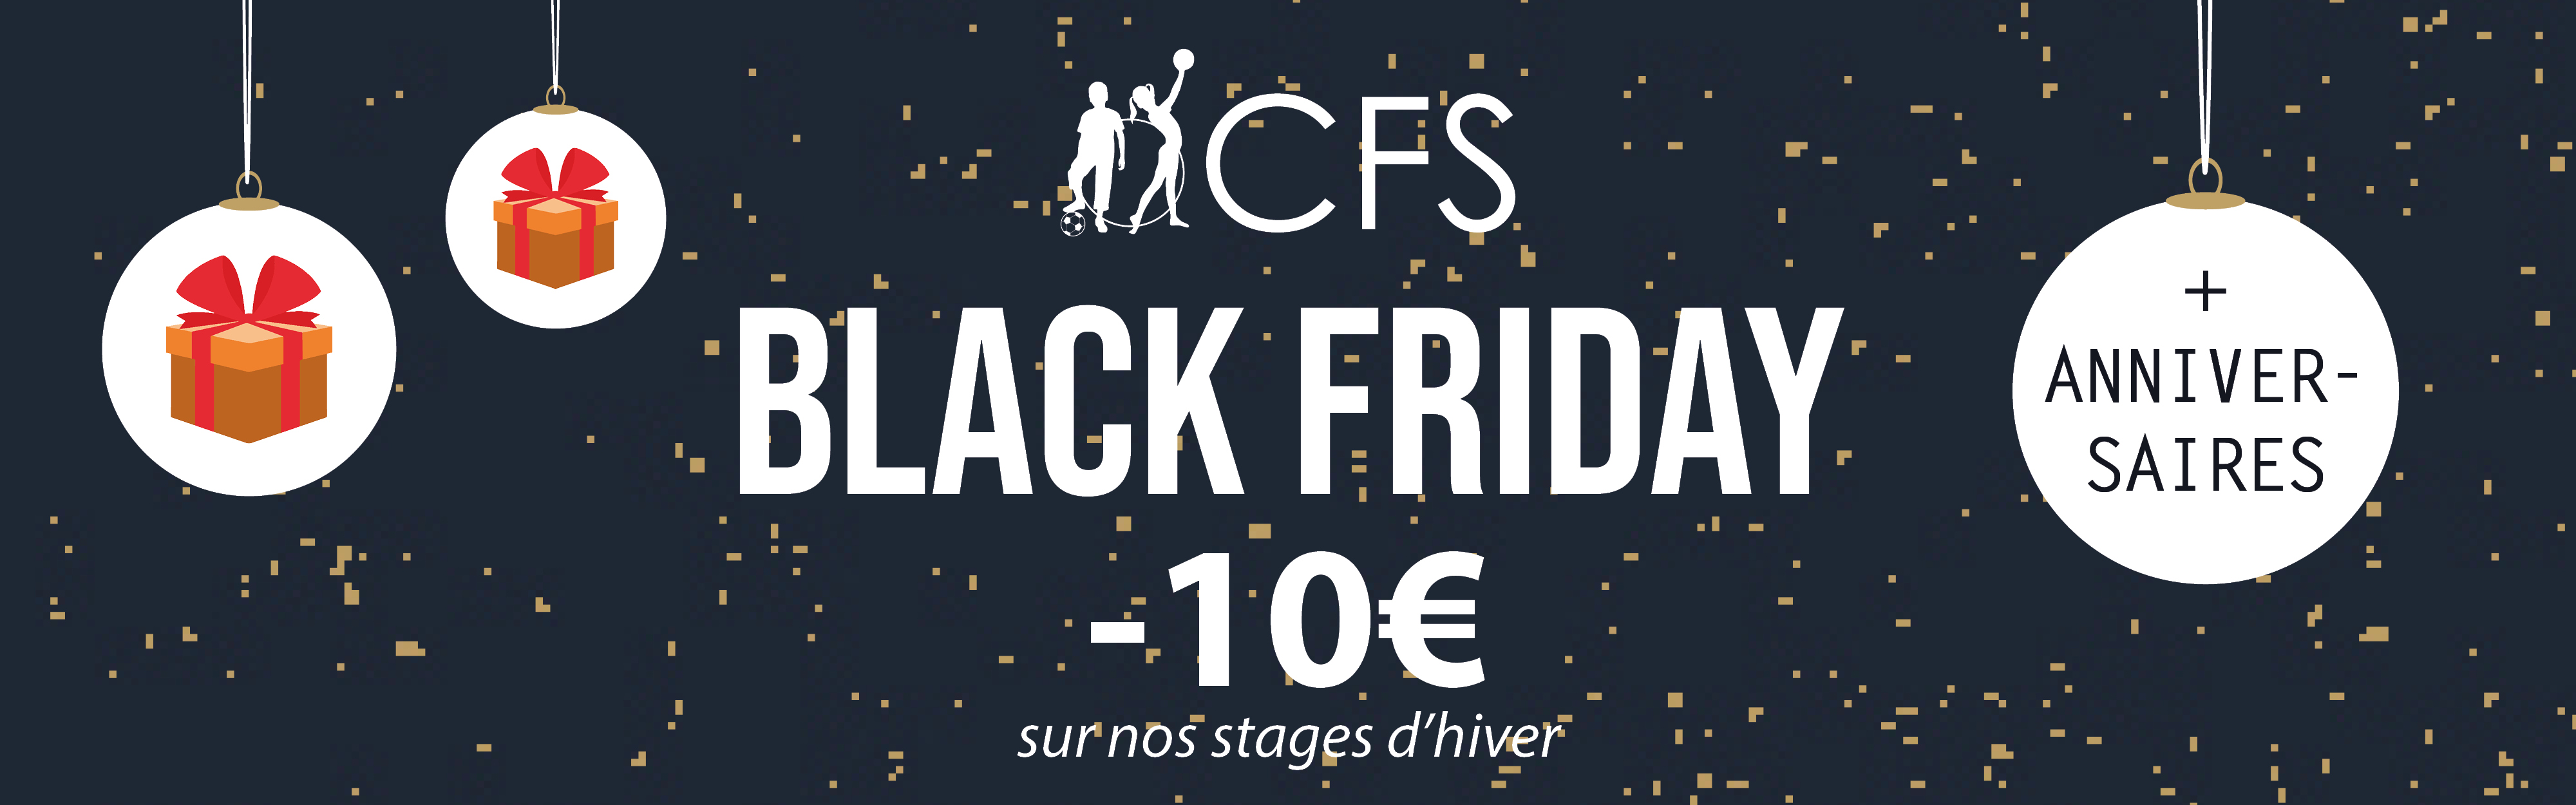 Profitez des offres Black Friday au CFS !